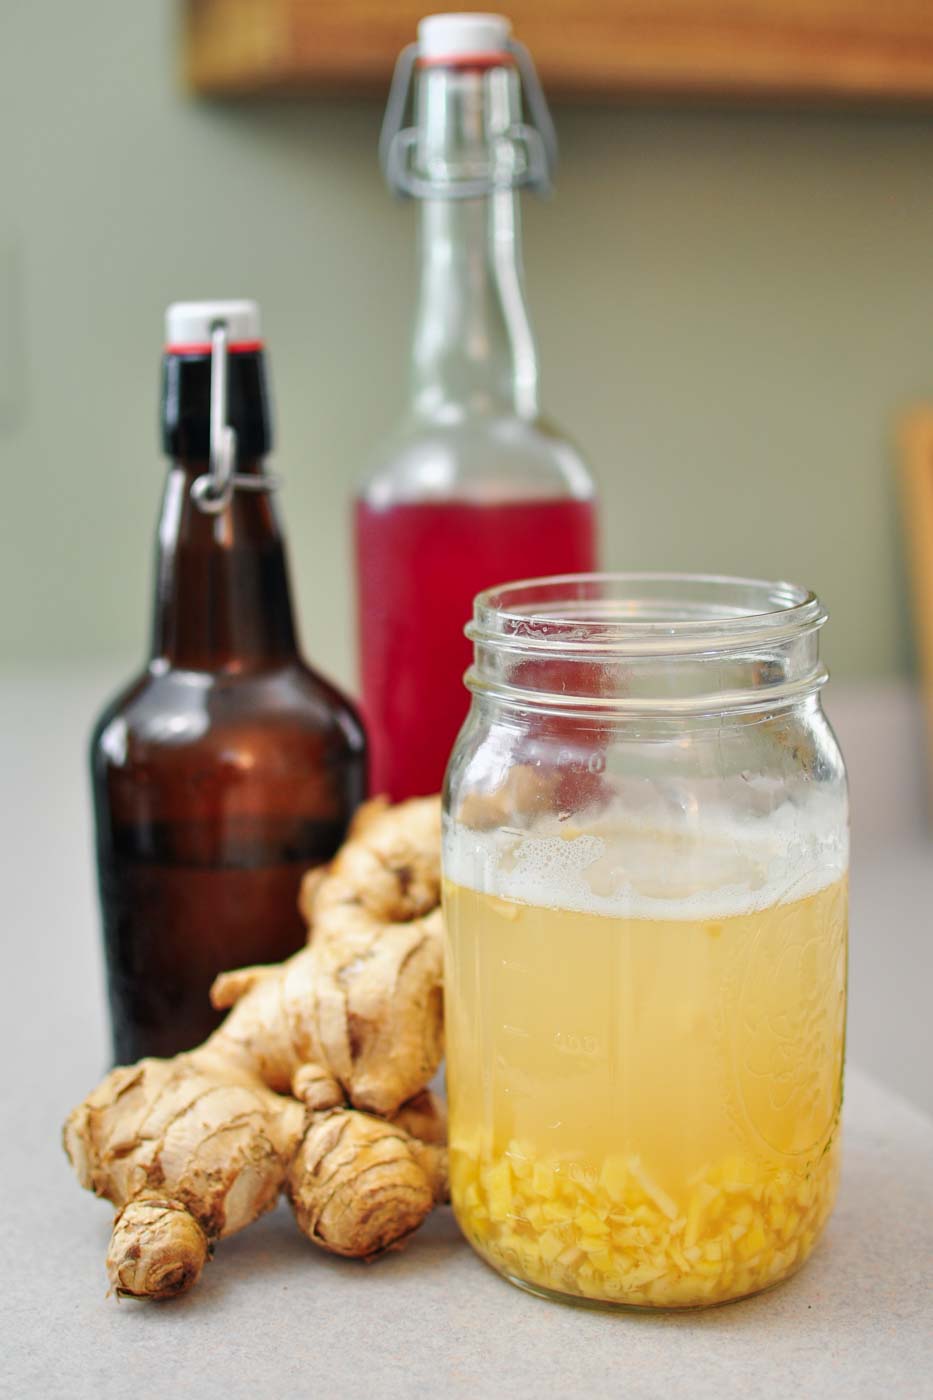 Ginger bug recipe for homemade soda